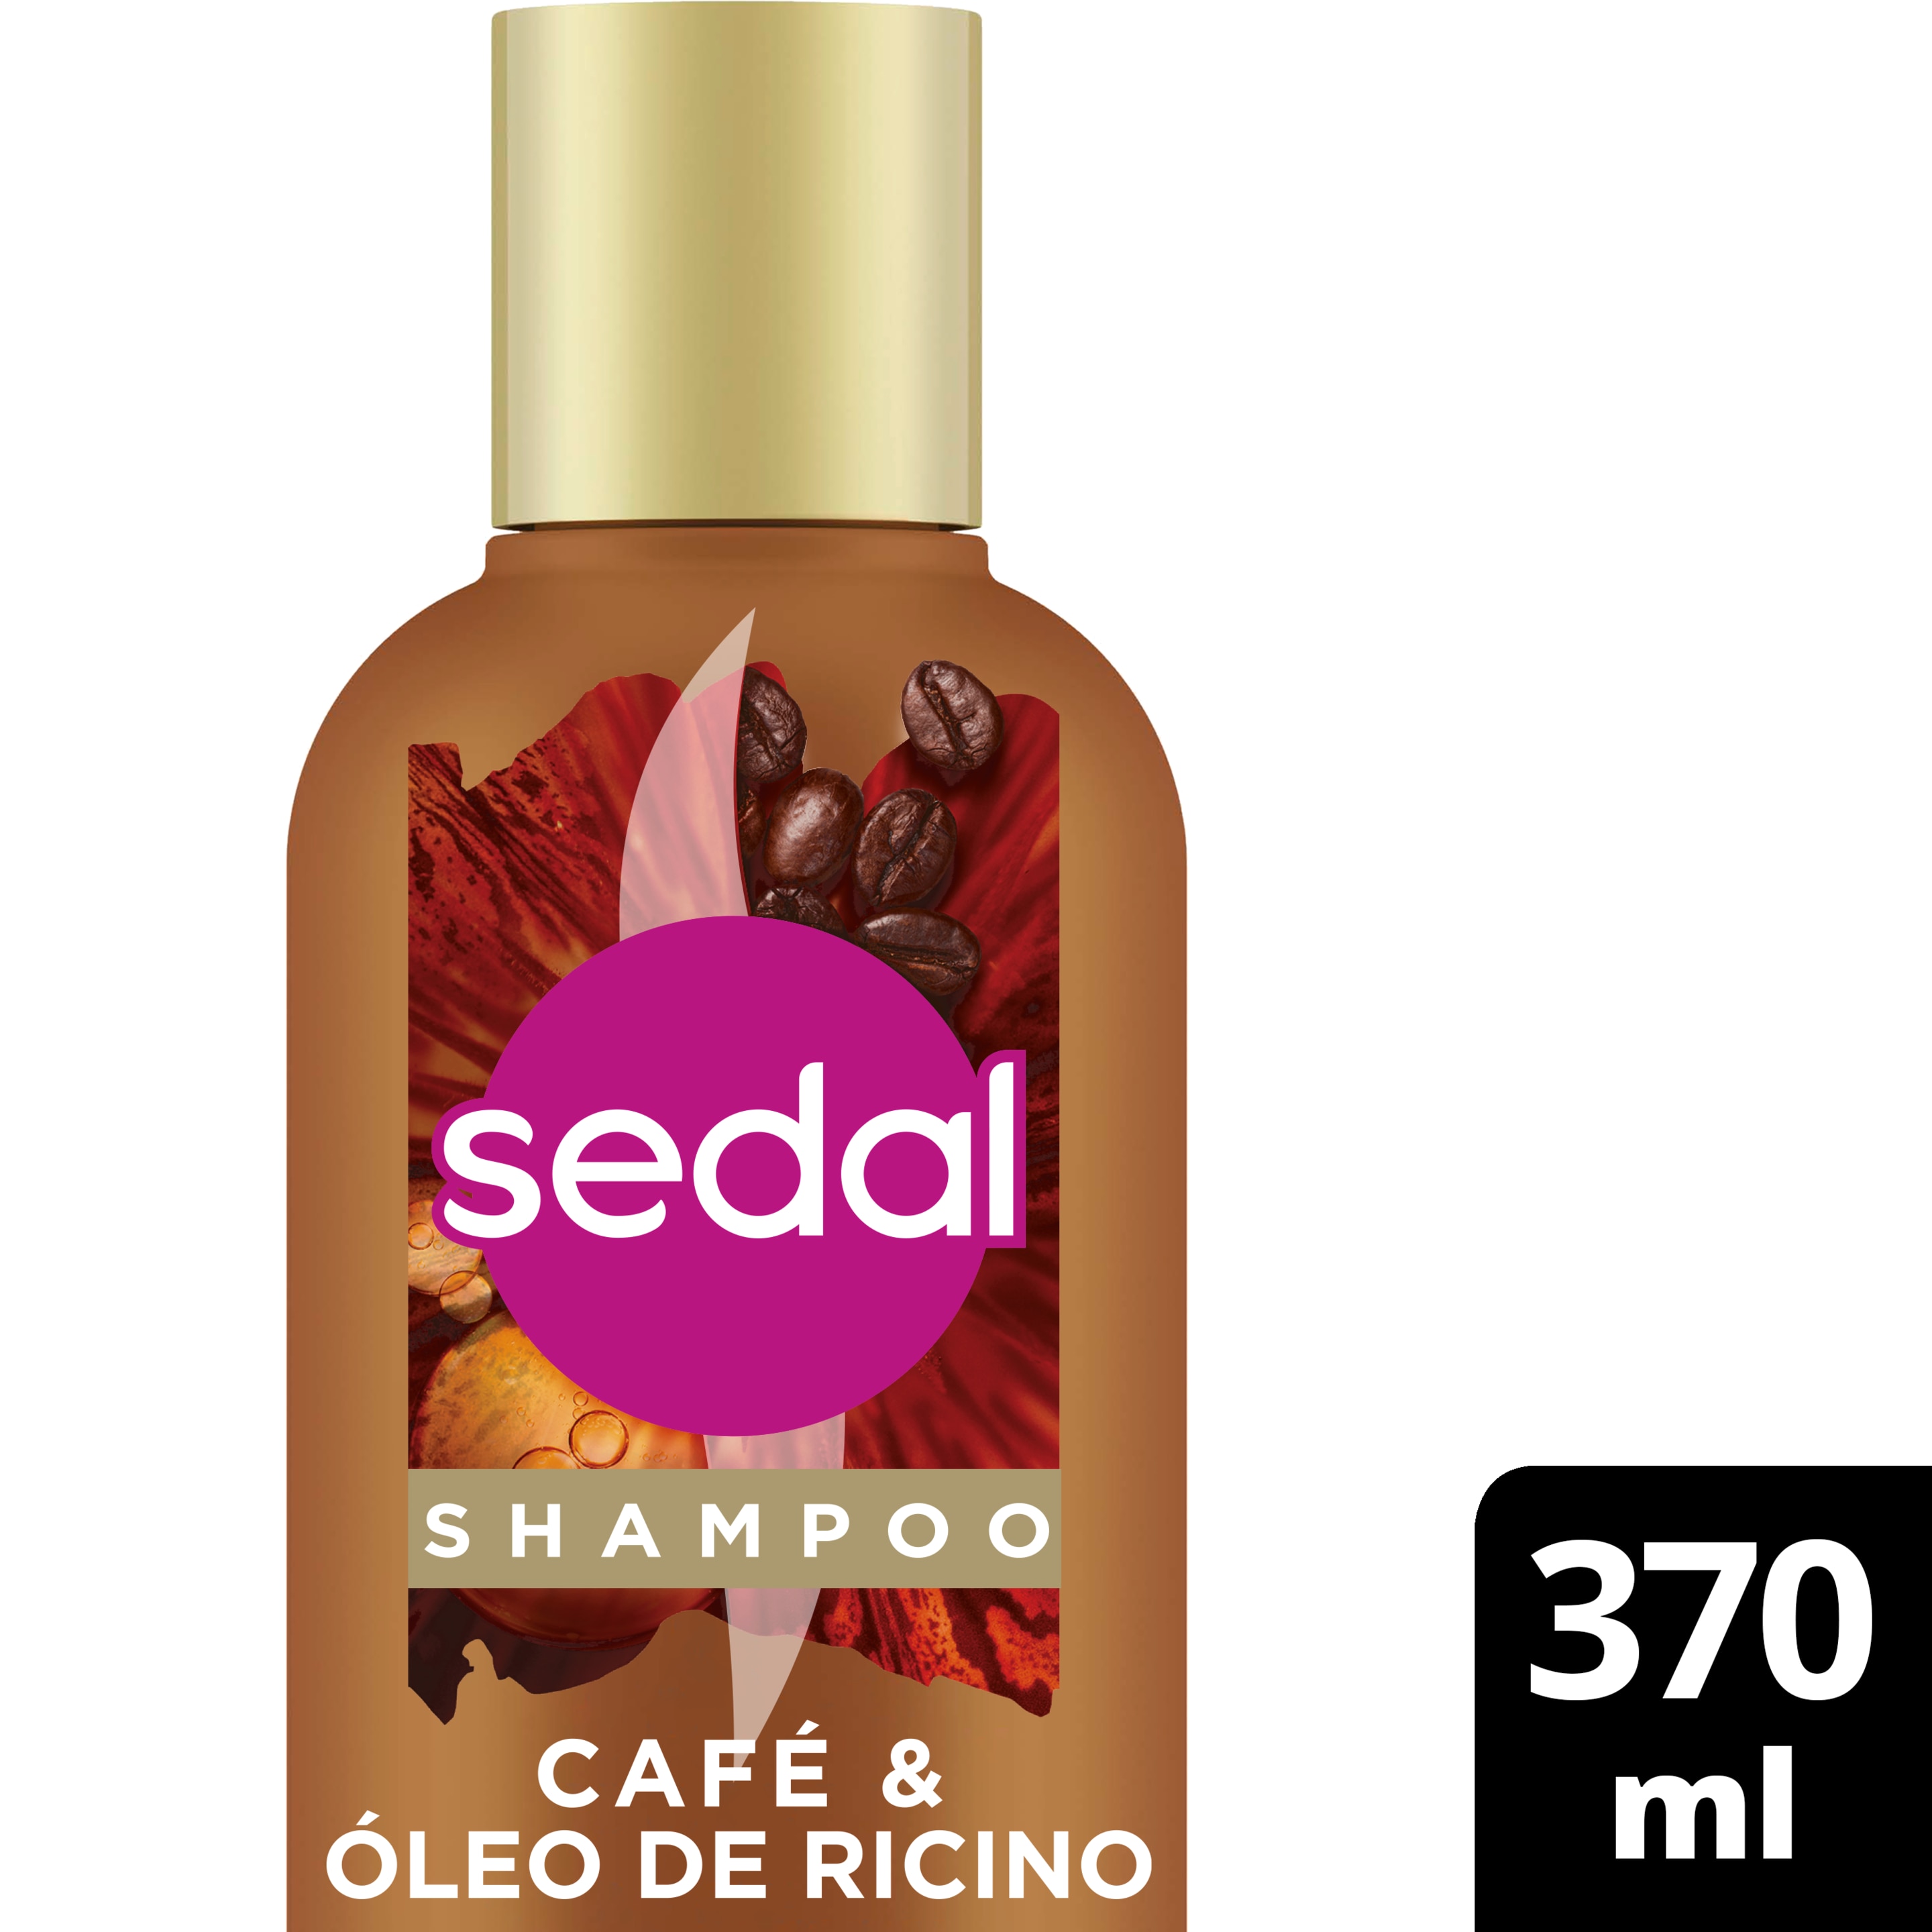 Shampoo Sedal Sin Sal Ni Parabenos Café y Óleo de Ricino 370ml